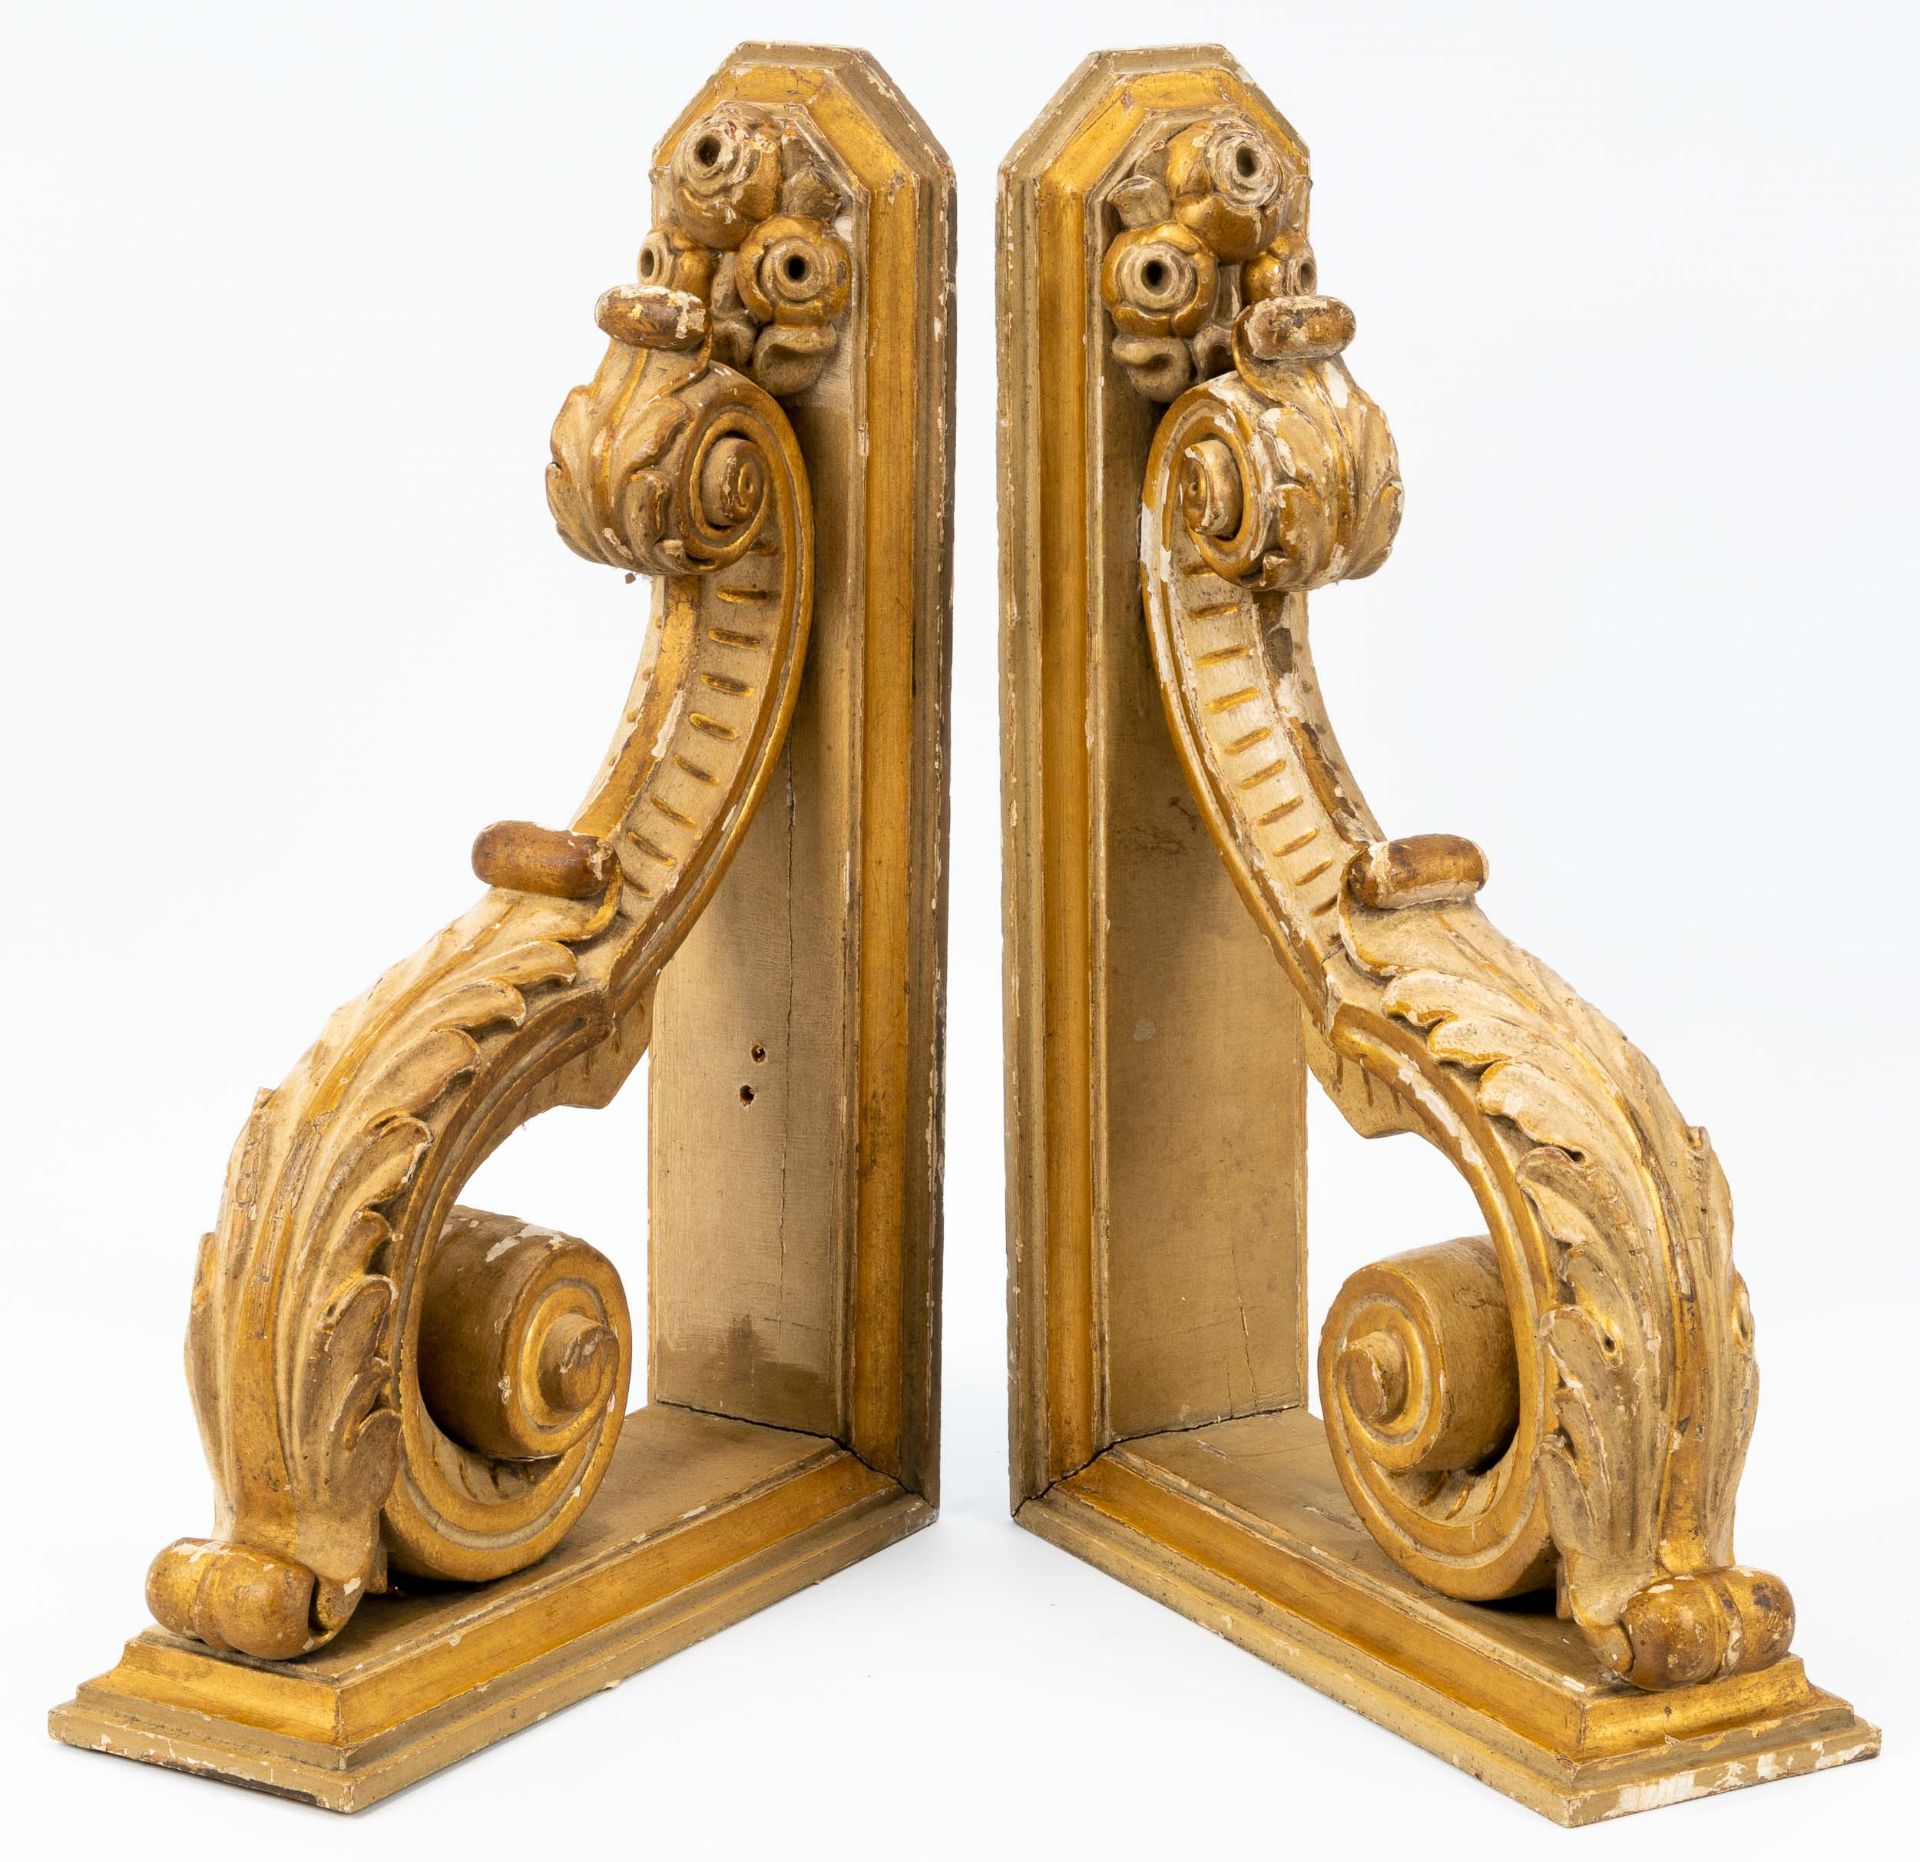 Paar geschnitzter Voluten-Stützwinkel, Holz geschnitzt, gefasst und vergoldet. Historismus, 19. Jhd - Image 2 of 11